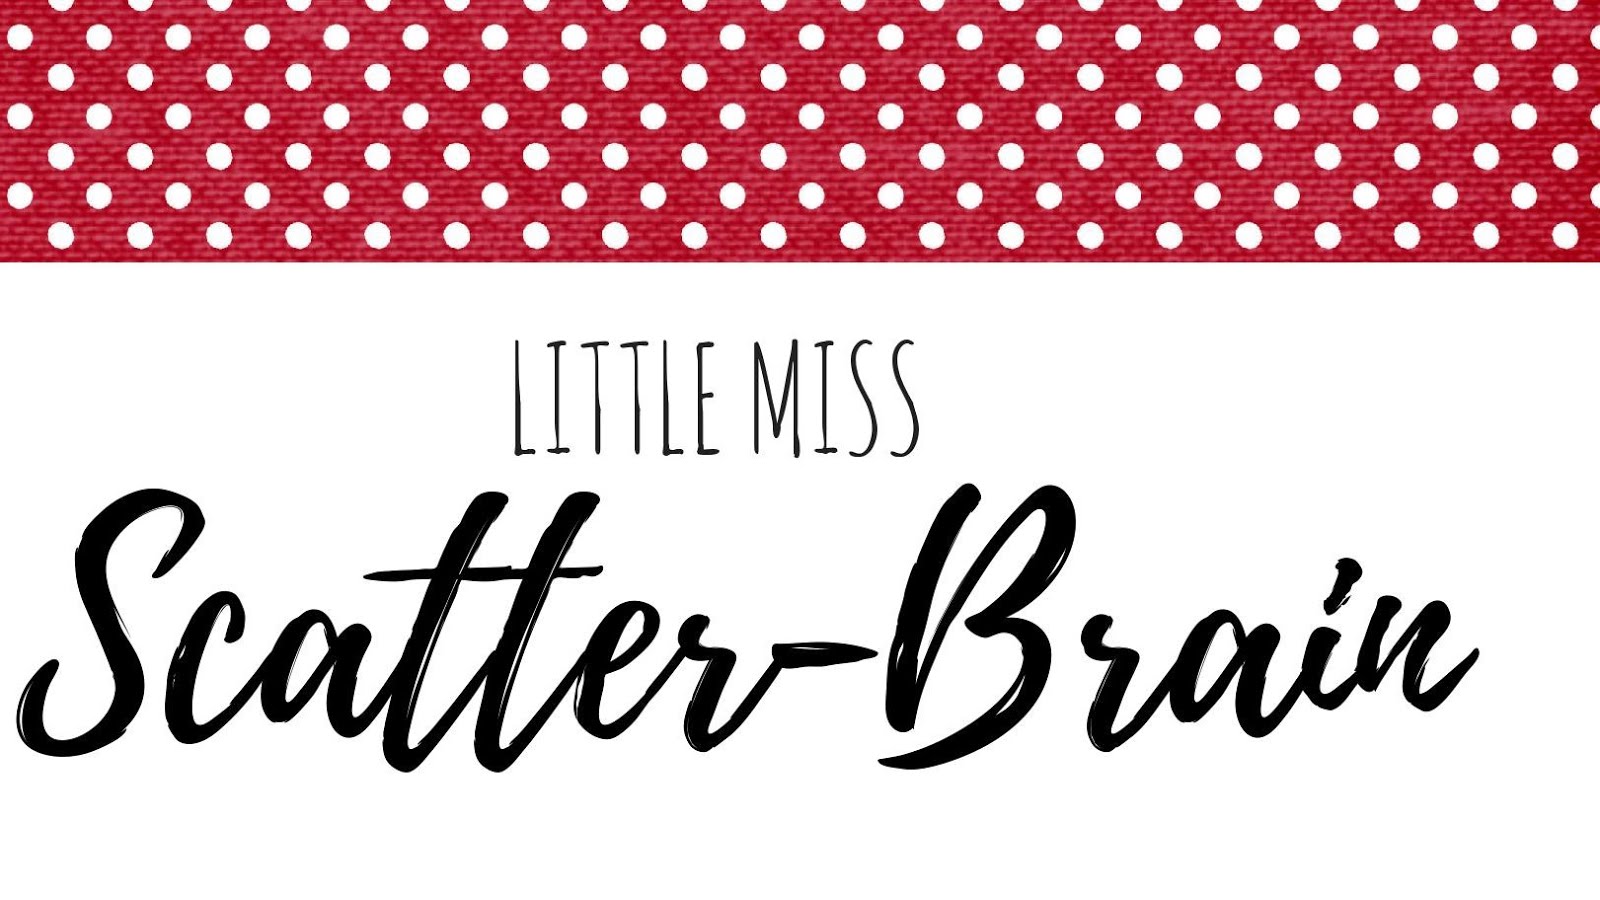 Little Miss Scatter-Brain